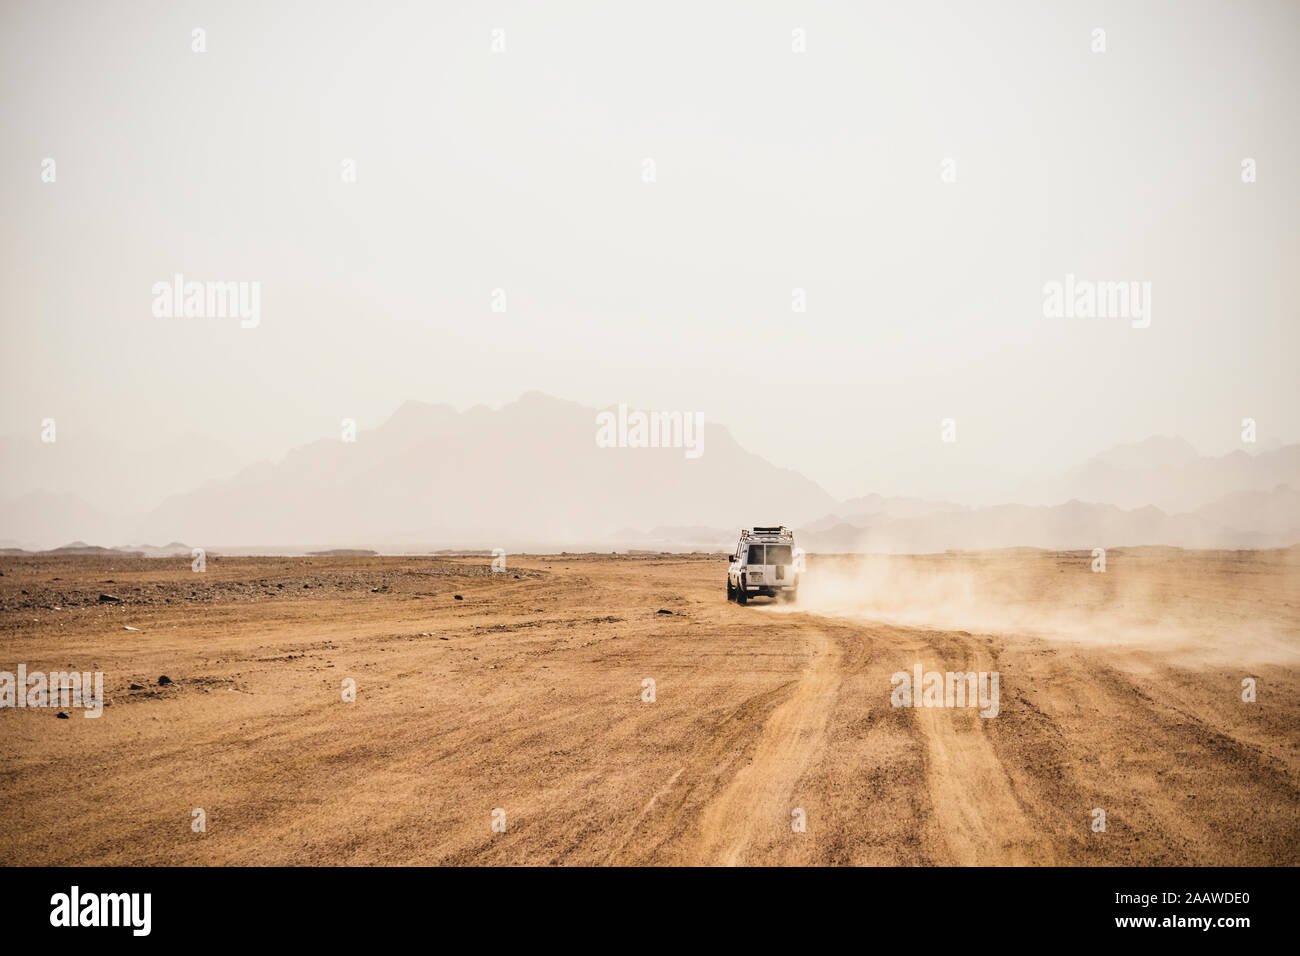 Vehículo off-road moviendo el árido paisaje contra el cielo despejado durante el día soleado, Suez, Egipto Foto de stock